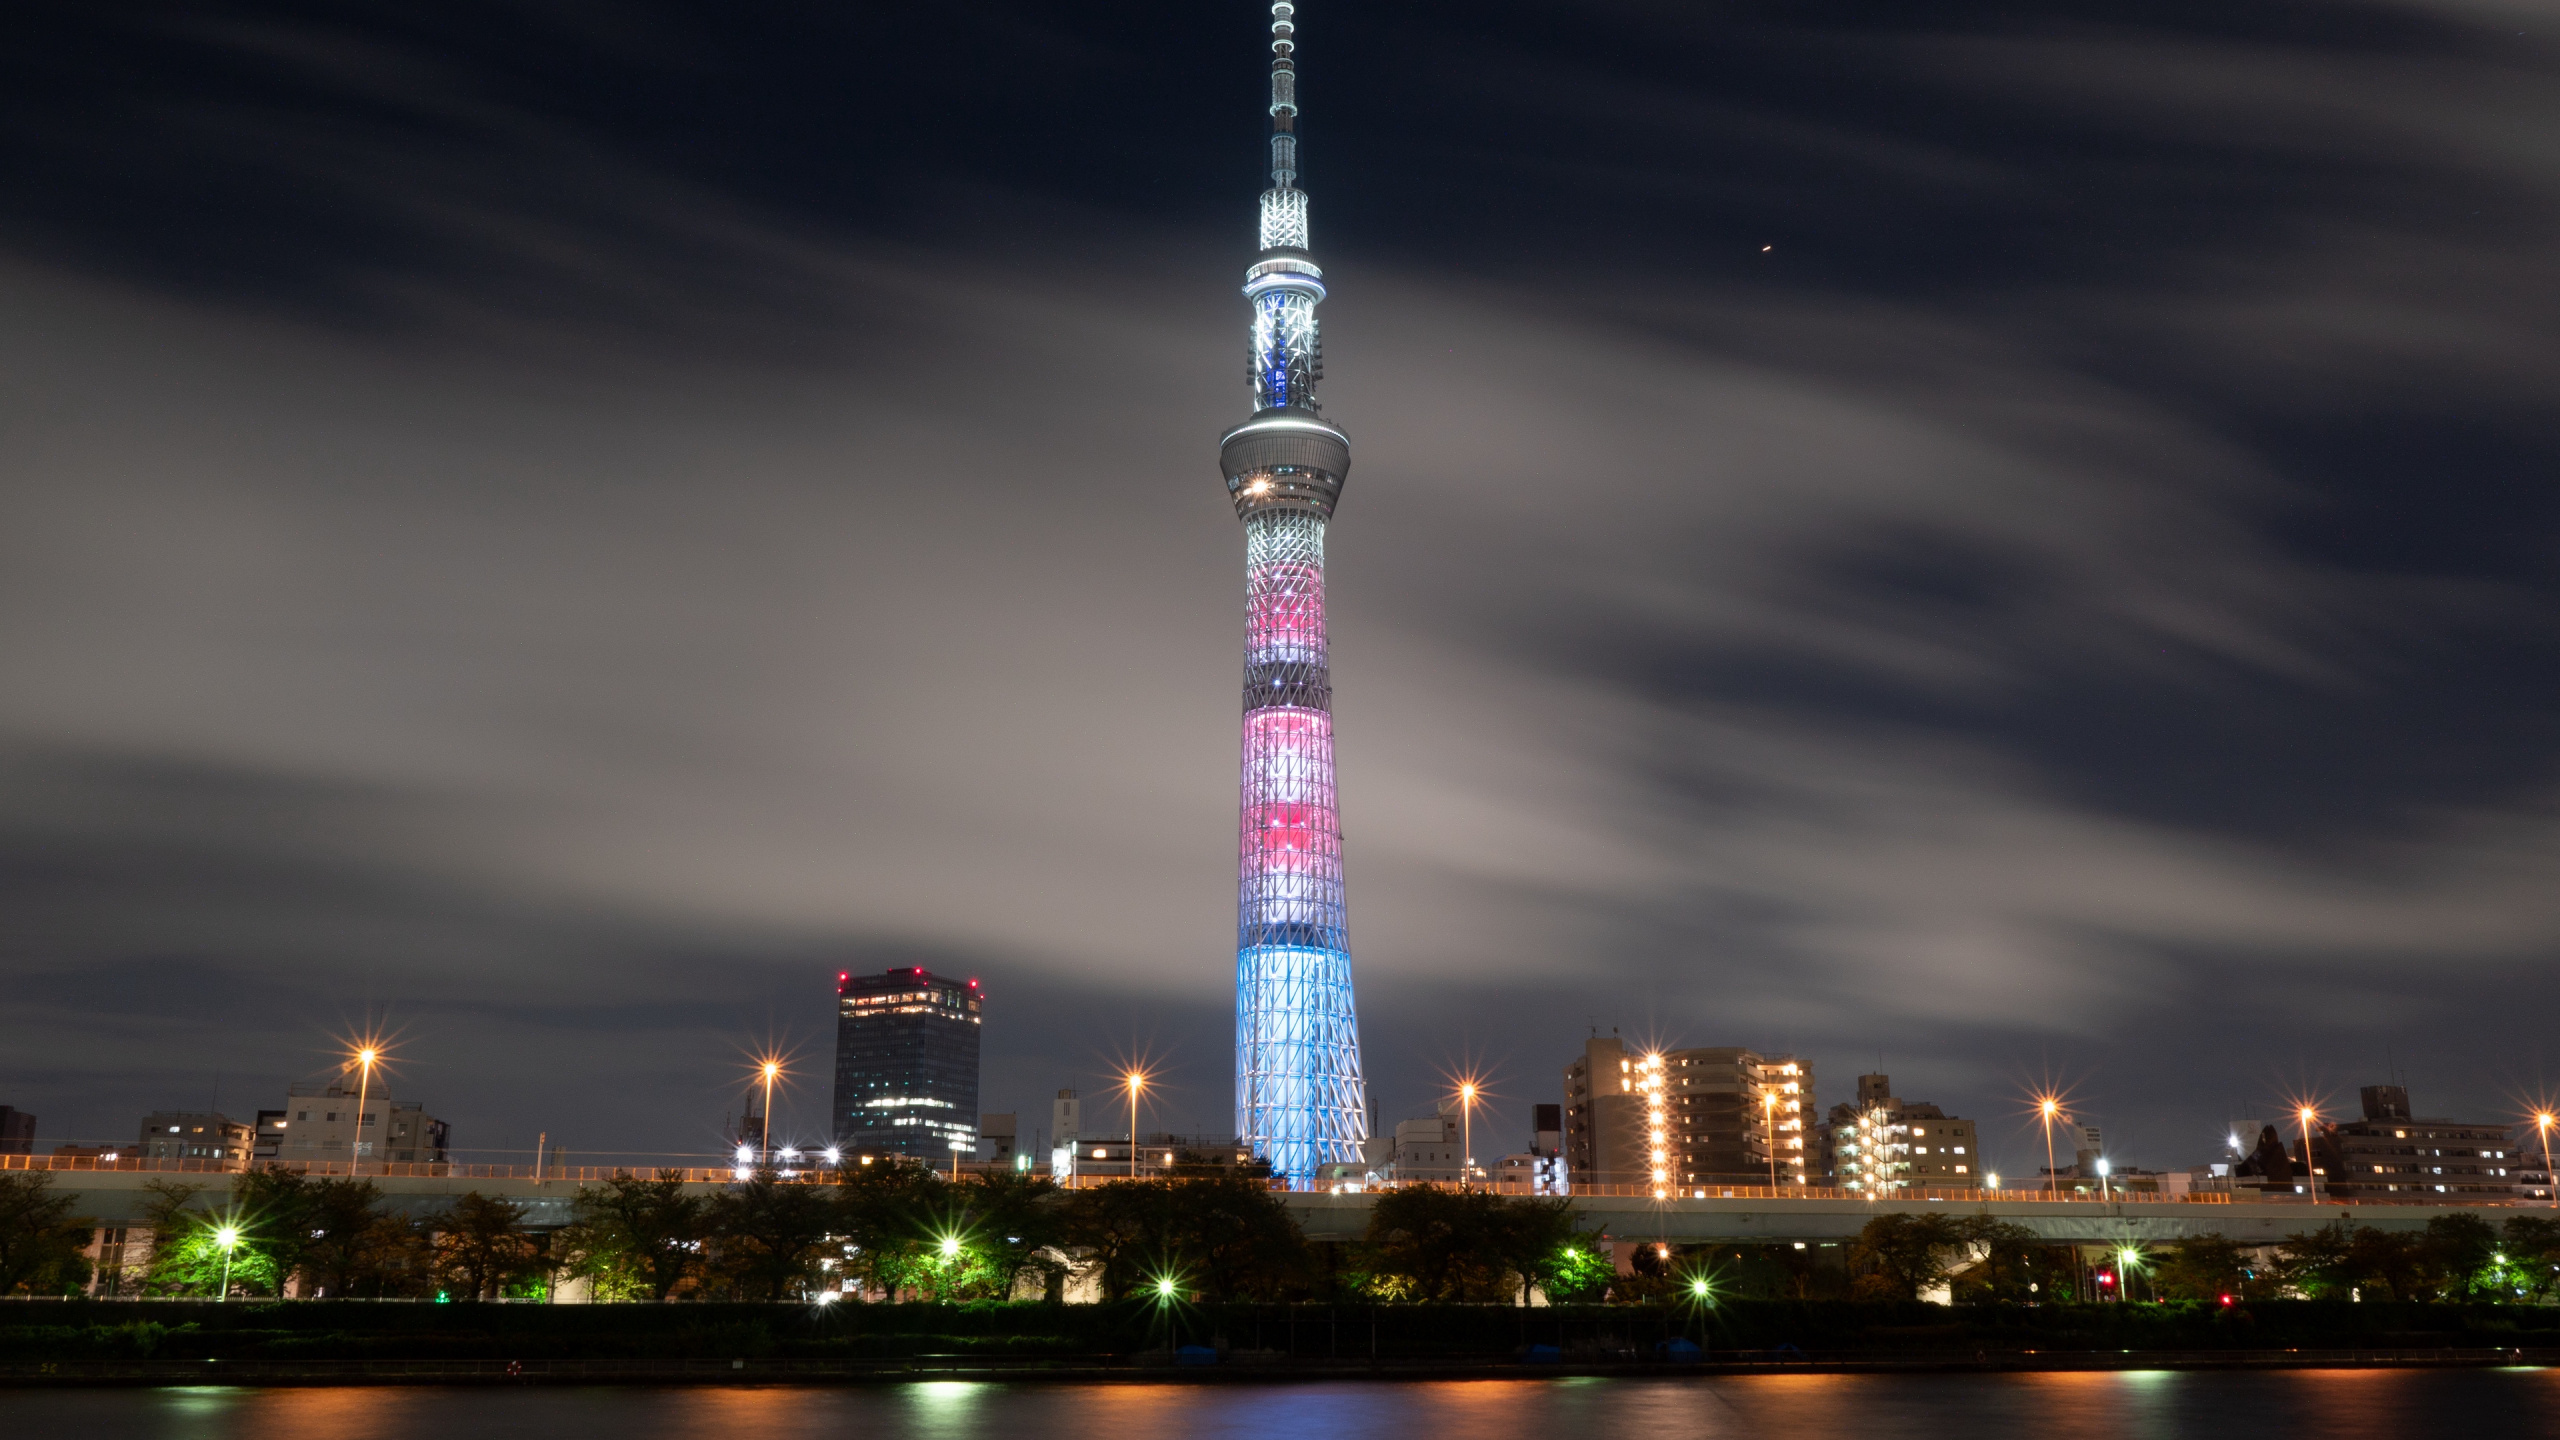 东京塔, 里程碑, 城市, 城市景观, 大都会 壁纸 2560x1440 允许